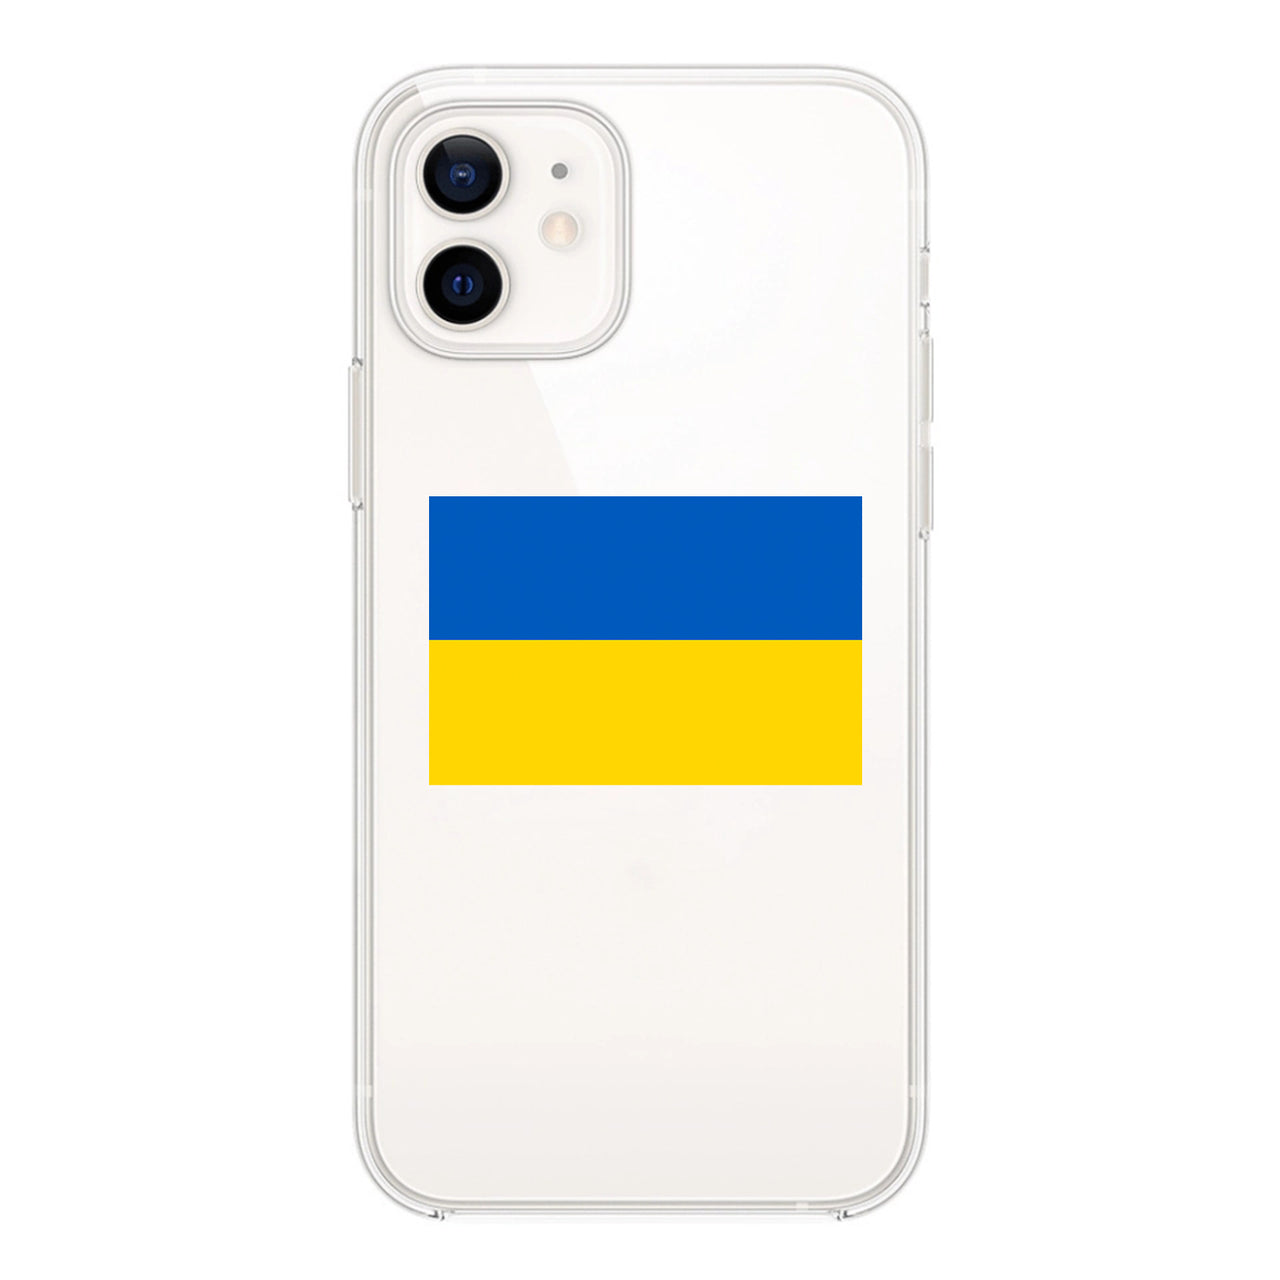 Ukraine Designed Transparent Silicone iPhone Cases